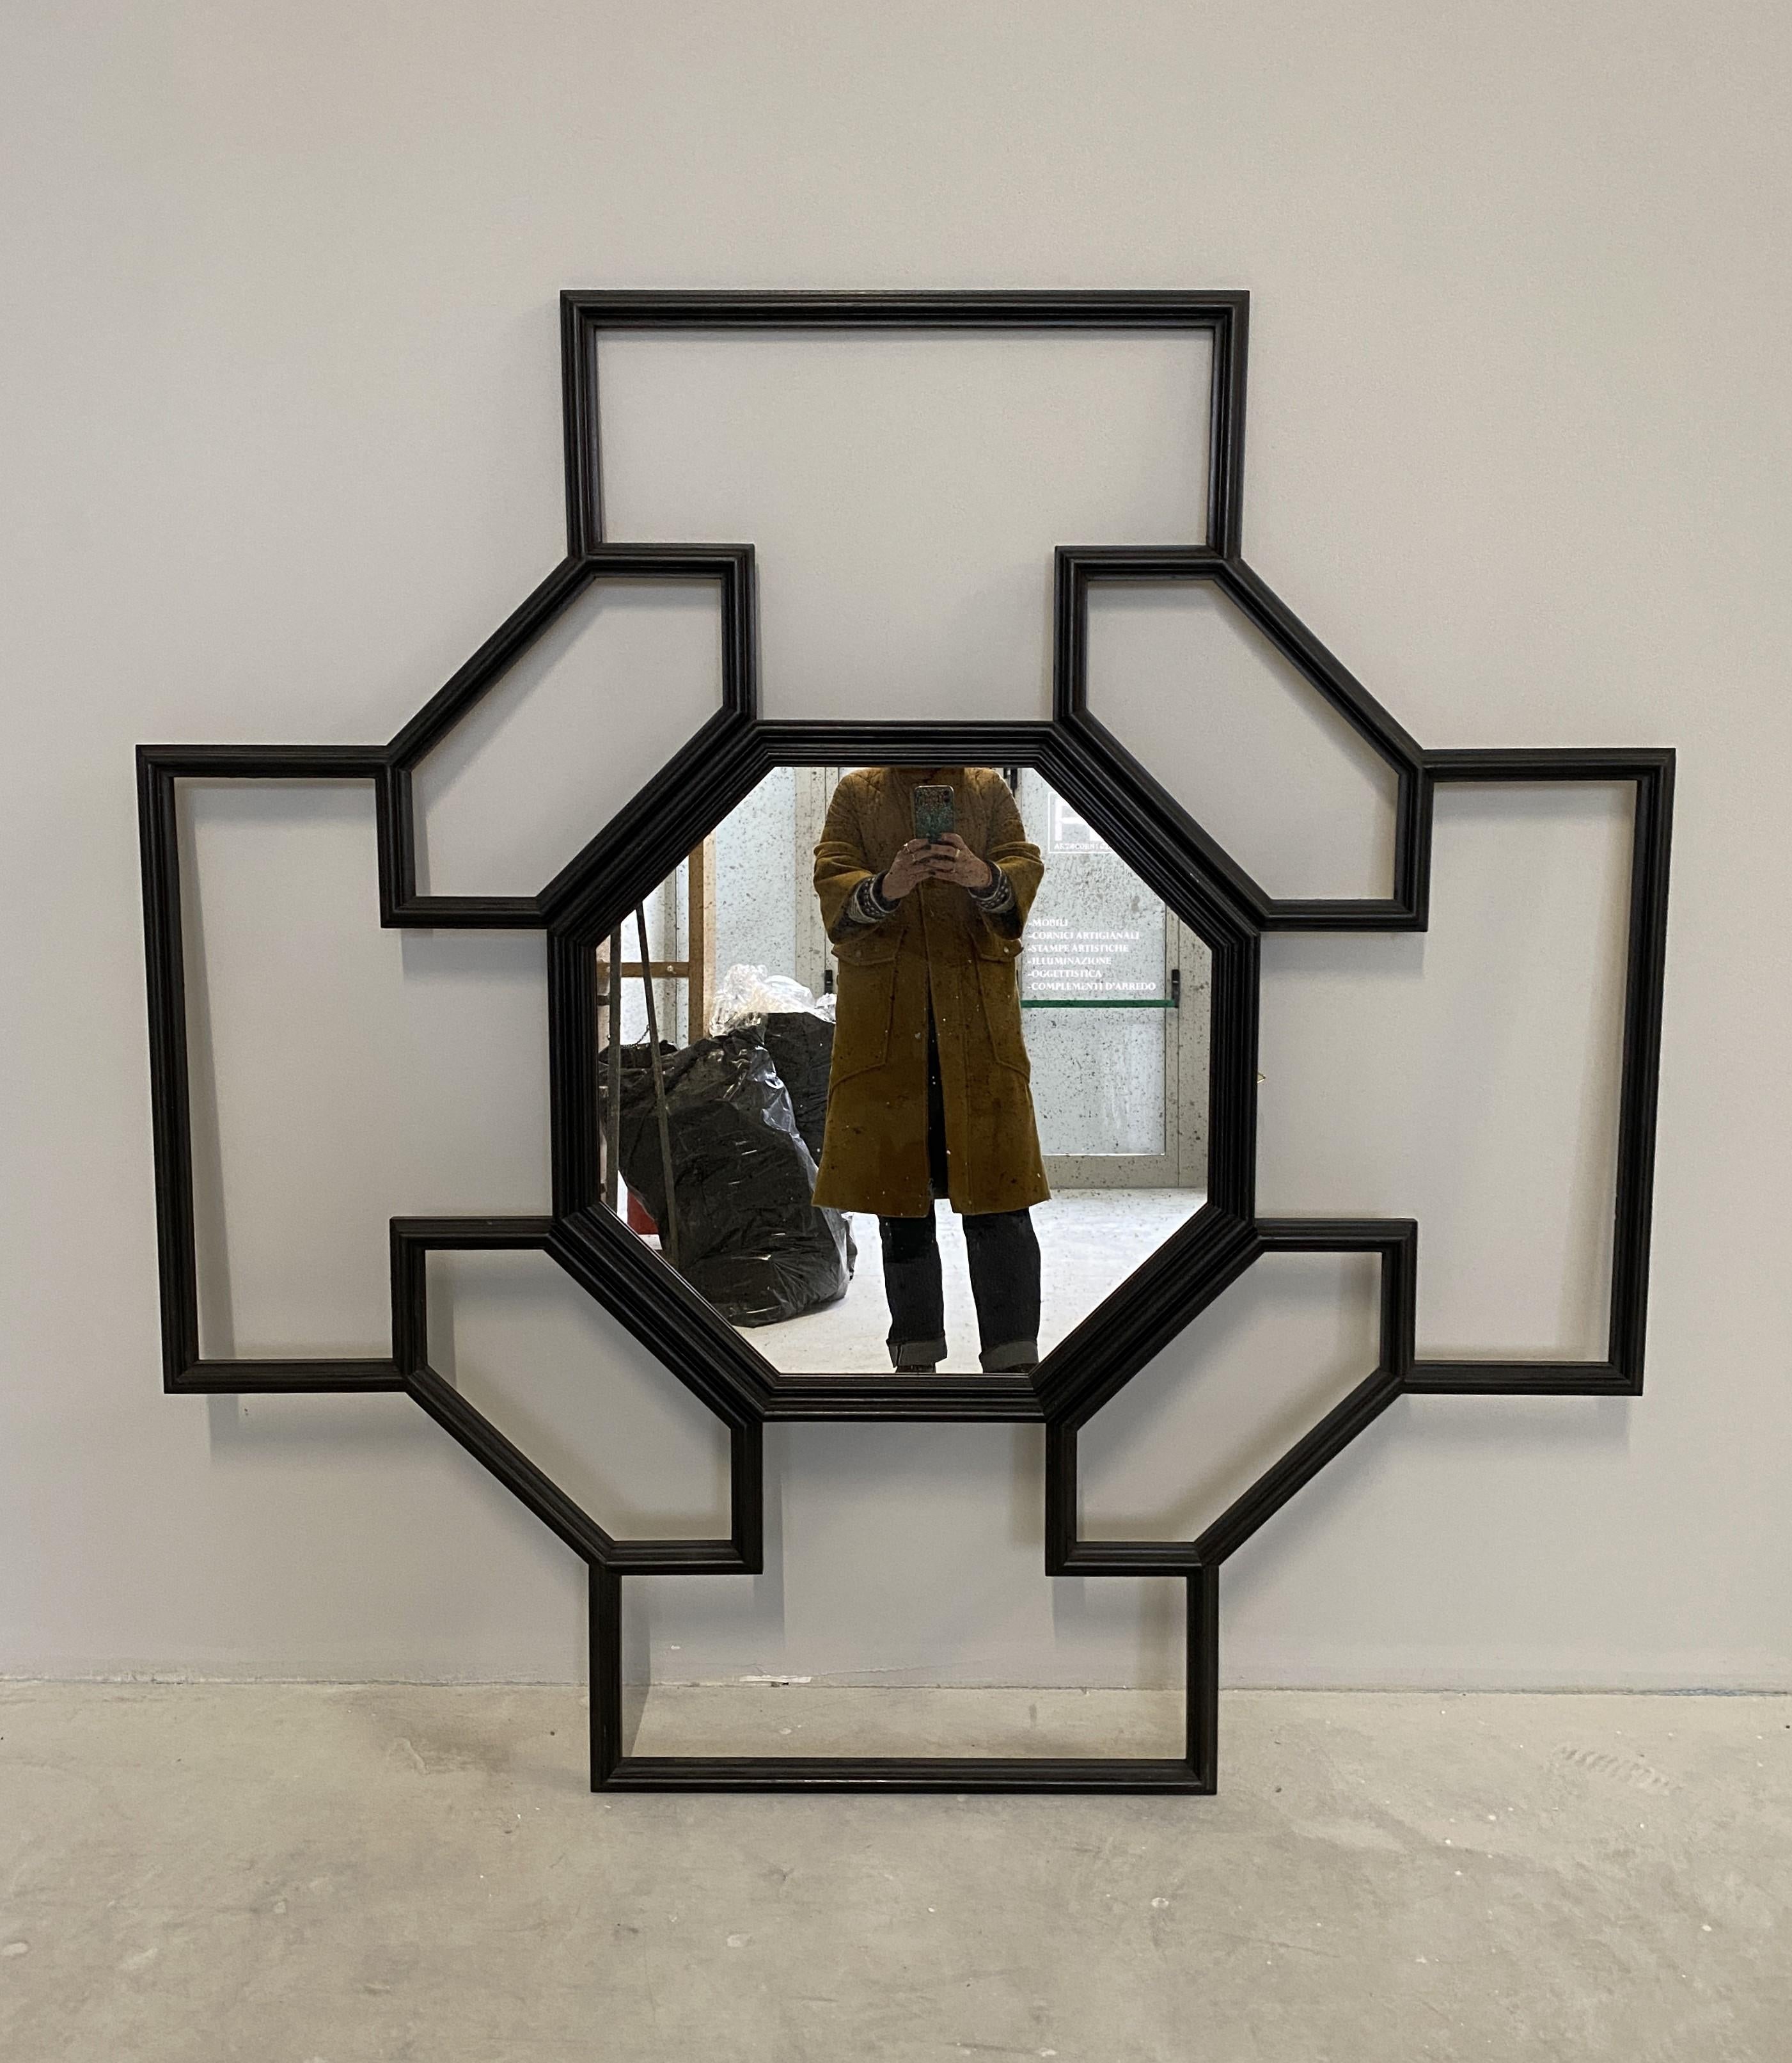 Eine handgefertigte Tulipwood-Struktur macht diesen Spiegel exklusiv und elegant. Der Rahmen bildet geometrische Rautenformen, die einen achteckigen Spiegel in der Mitte einbeziehen. Die Rahmen sind mit einer schwarzen Patina überzogen. 
Maße des